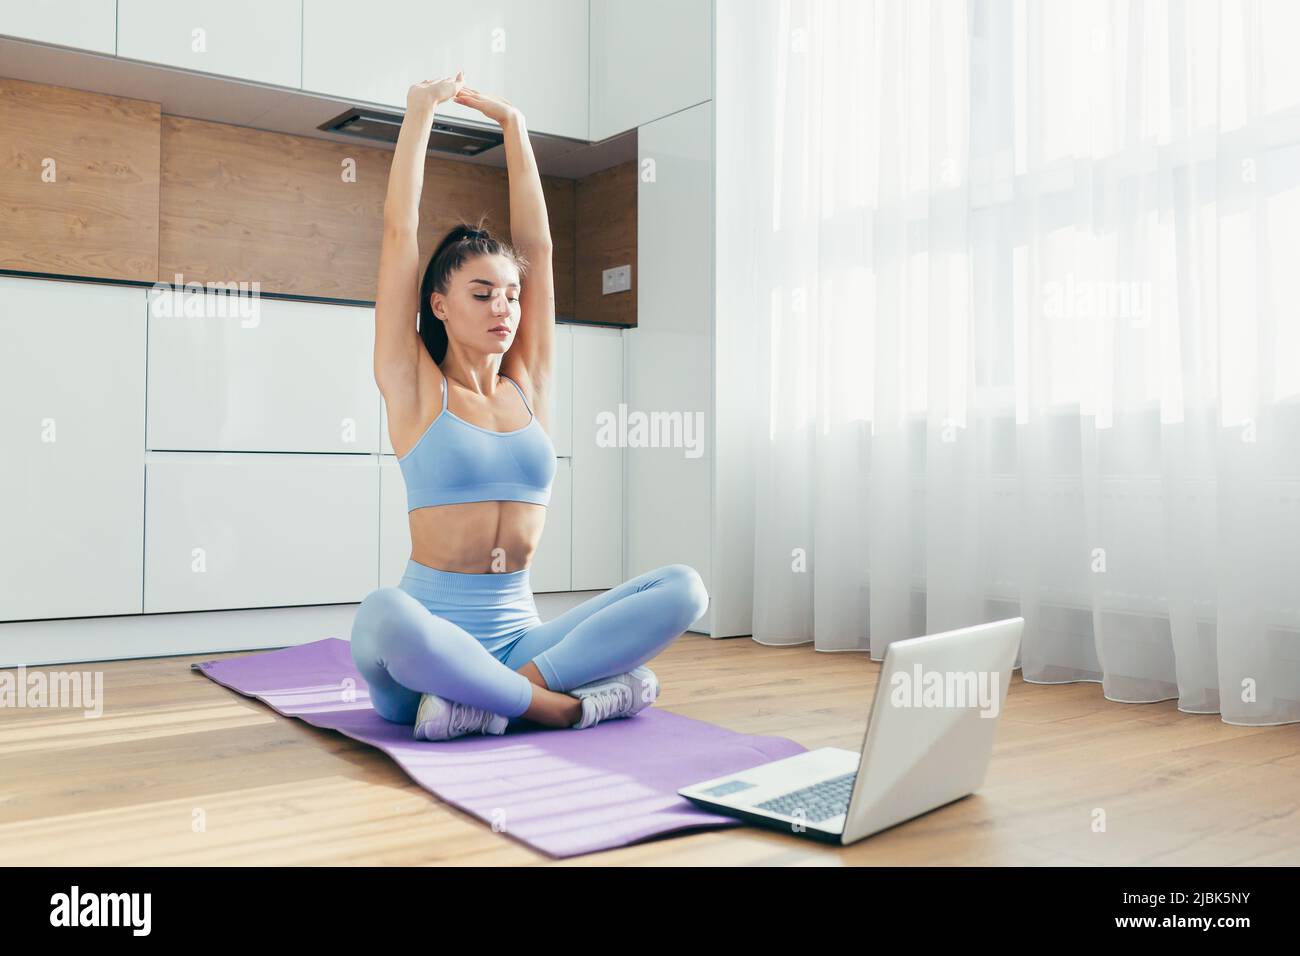 Mujer haciendo ejercicio en casa fotografías e imágenes de alta resolución  - Página 6 - Alamy